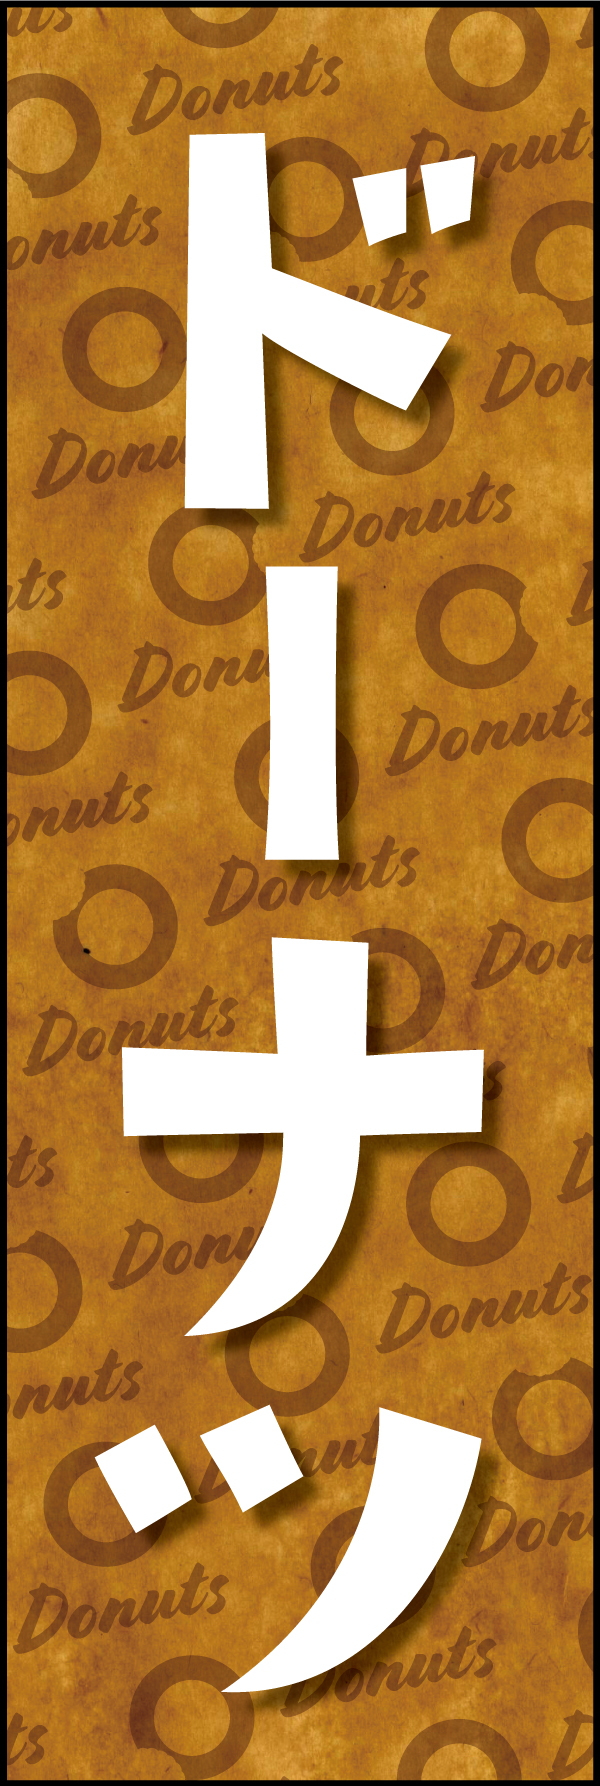 ドーナツ 190_01「ドーナツ」ののぼりです。クラフト感ある包み紙のような背景デザインと文字で、ヘルシーでオーガニックな雰囲気を演出しました。（Y.M） 